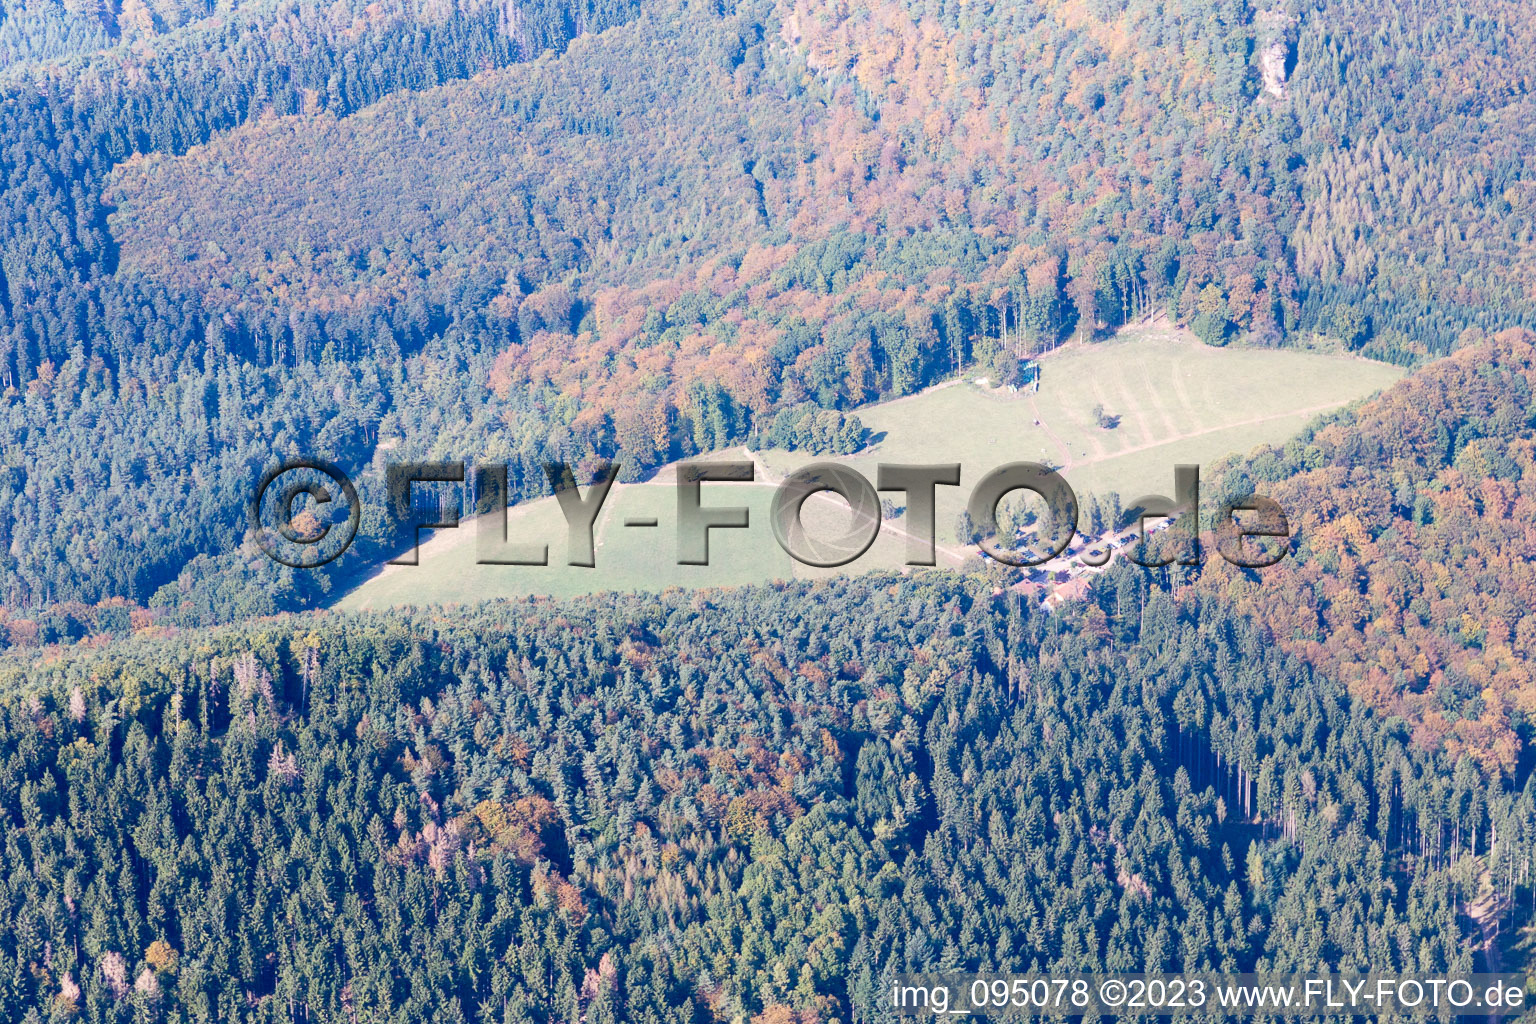 Wingen im Bundesland Bas-Rhin, Frankreich von der Drohne aus gesehen